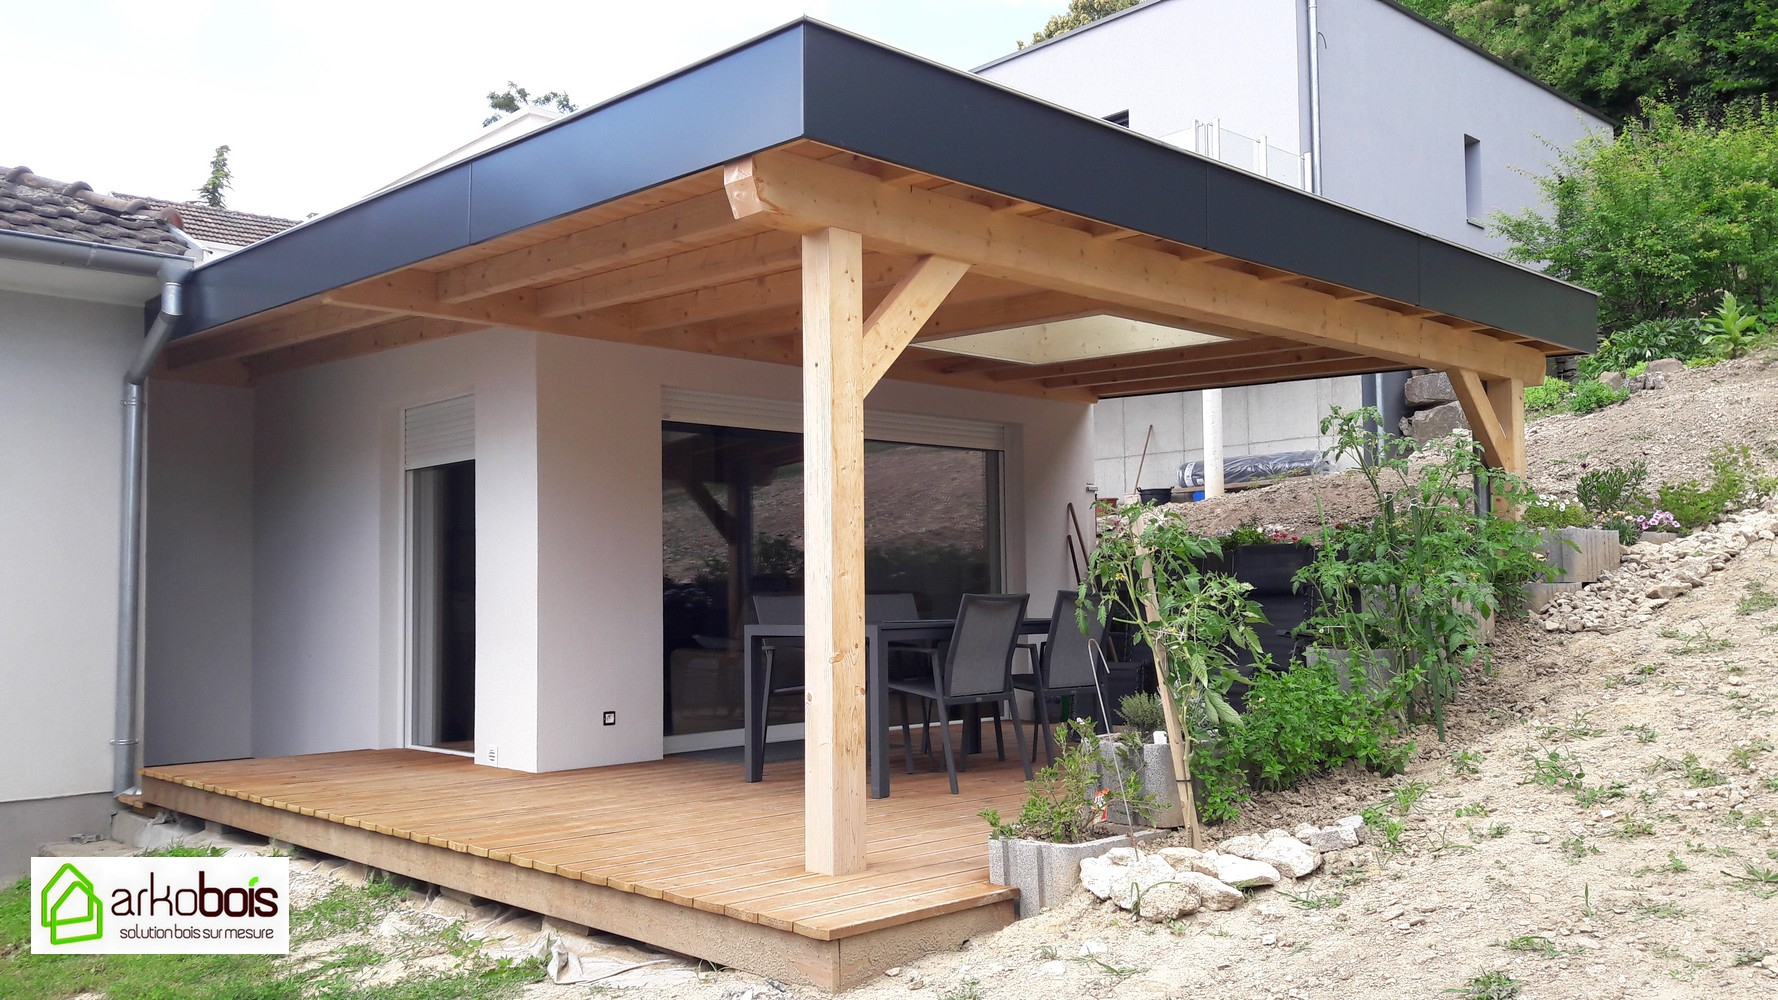 Arkobois — Notre Spécialité: L'agrandissement De Votre Maison tout Terrasse Couverte Toit Plat